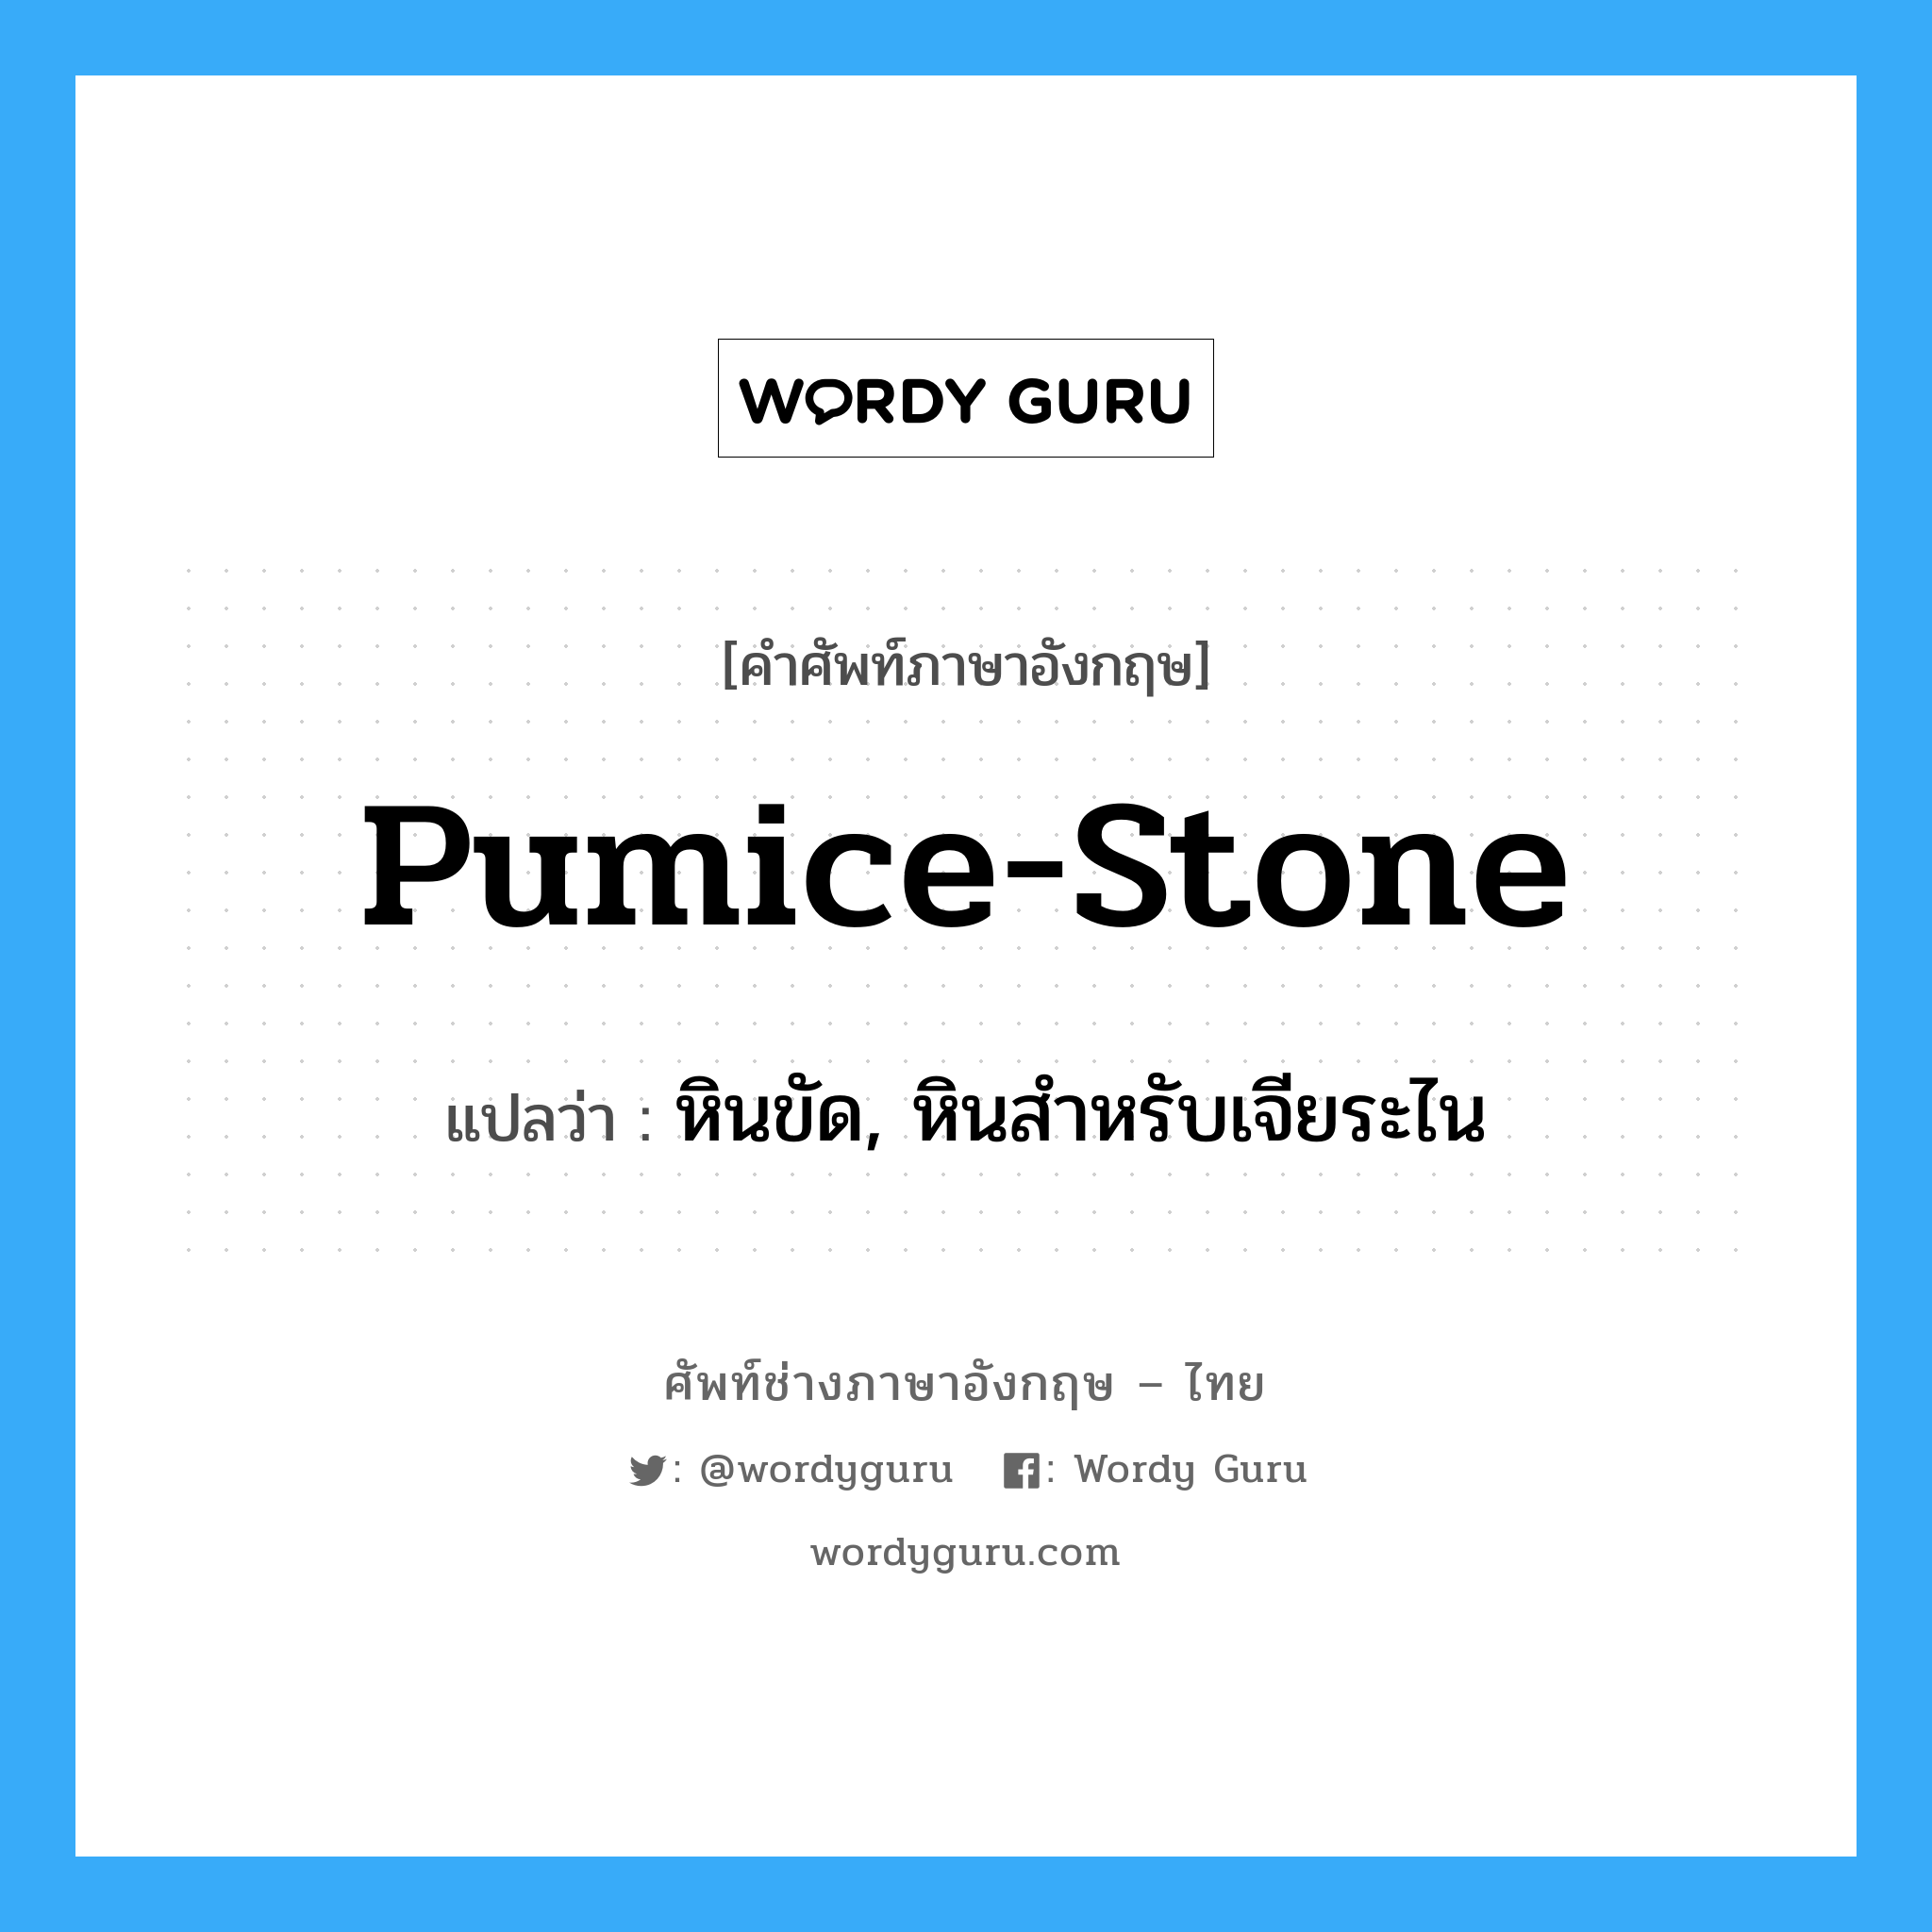 หินขัด, หินสำหรับเจียระไน ภาษาอังกฤษ?, คำศัพท์ช่างภาษาอังกฤษ - ไทย หินขัด, หินสำหรับเจียระไน คำศัพท์ภาษาอังกฤษ หินขัด, หินสำหรับเจียระไน แปลว่า pumice-stone